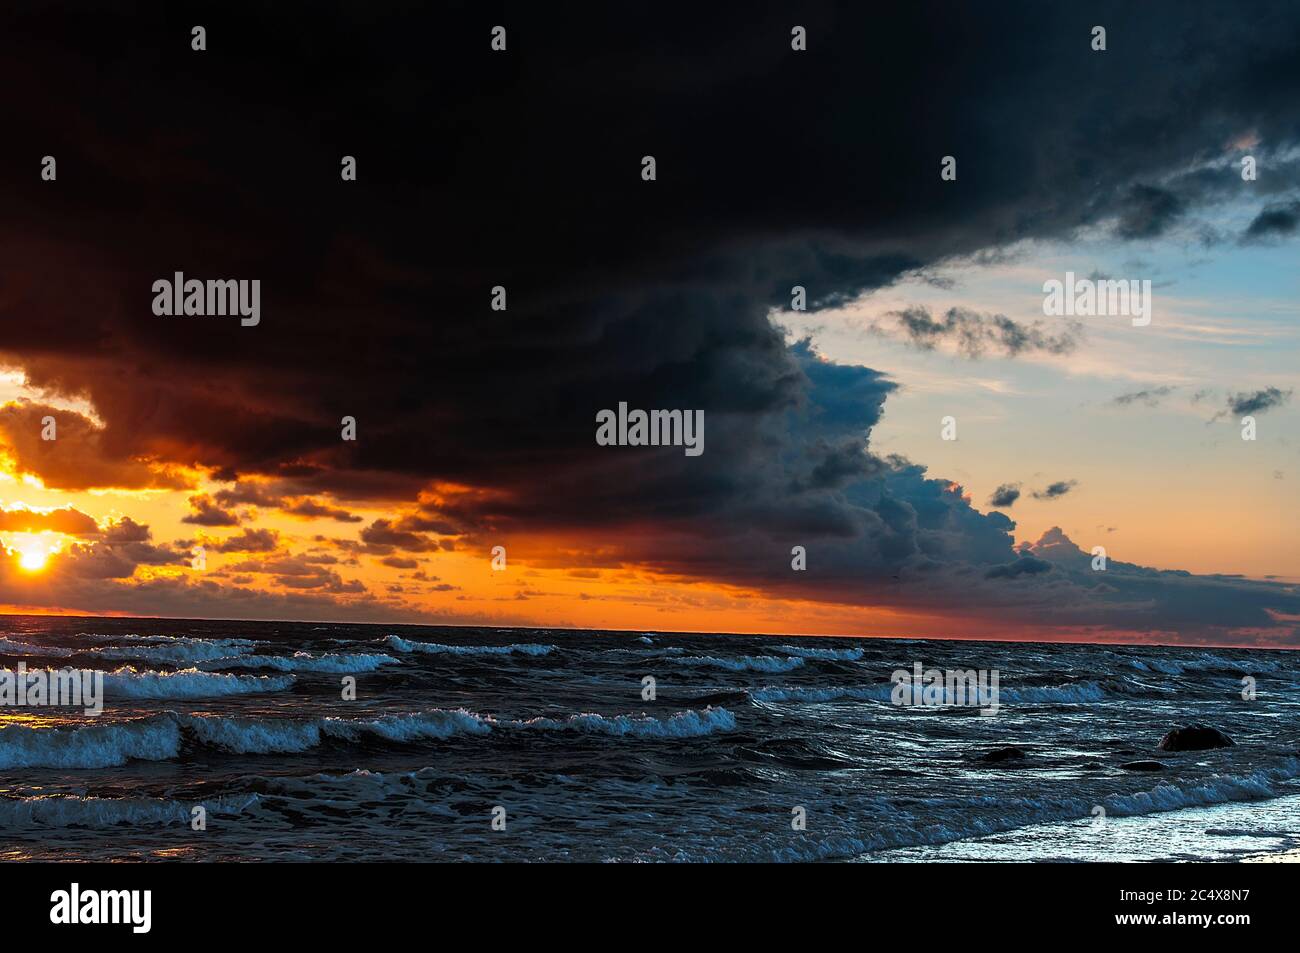 Das stürmische Meer, die dunkle bogenförmige Wolke über den meisten Himmel, die Sonne bei Sonnenuntergang färbt den Himmel mit einem dramatisch leuchtend gelb-roten Licht Stockfoto